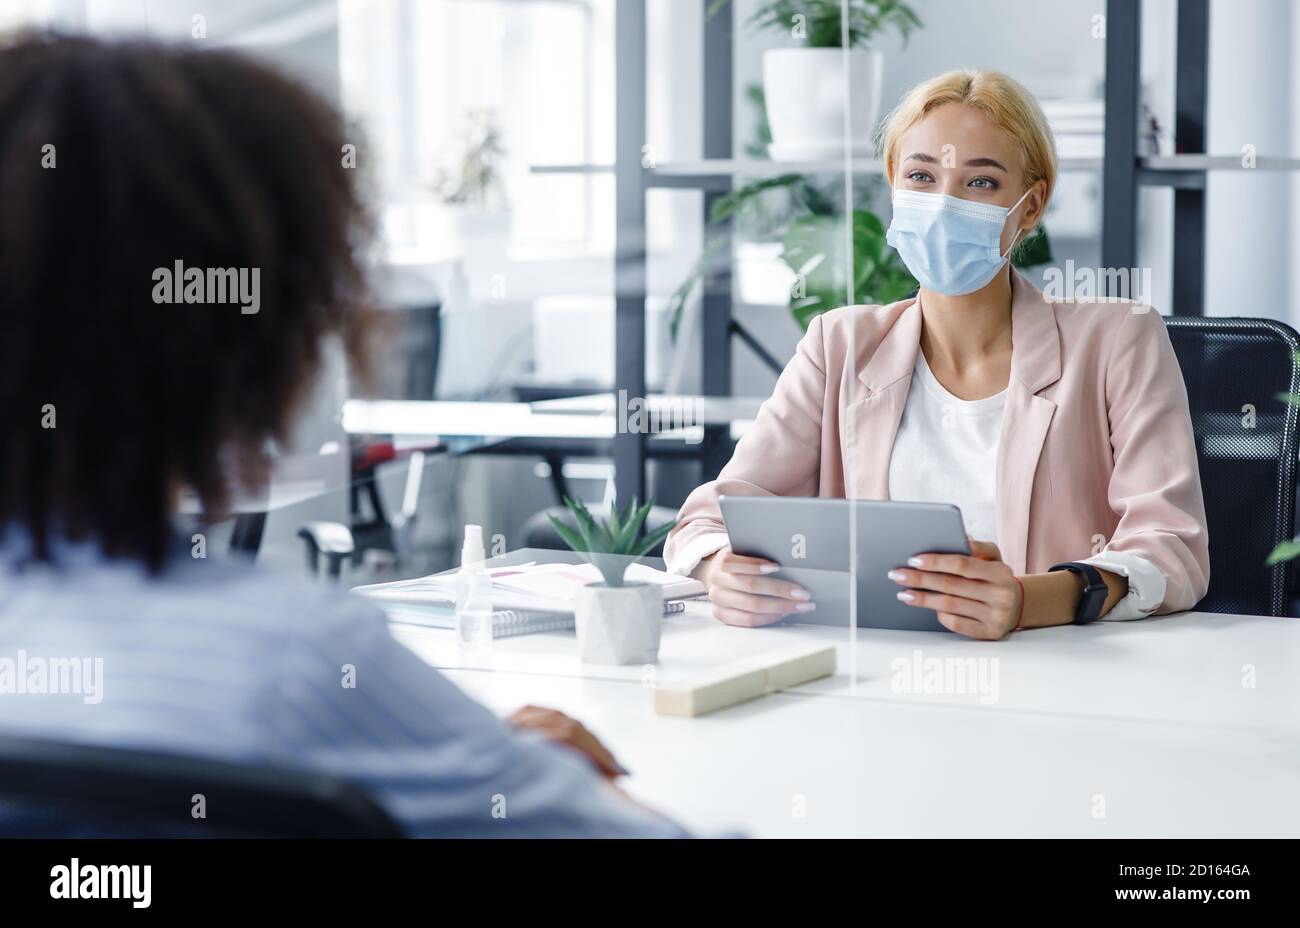 Neue normale und moderne Interview während covid-19 Ausbruch. HR-Manager mit Laptop sieht afroamerikanische Frau durch Schutzglas Stockfoto